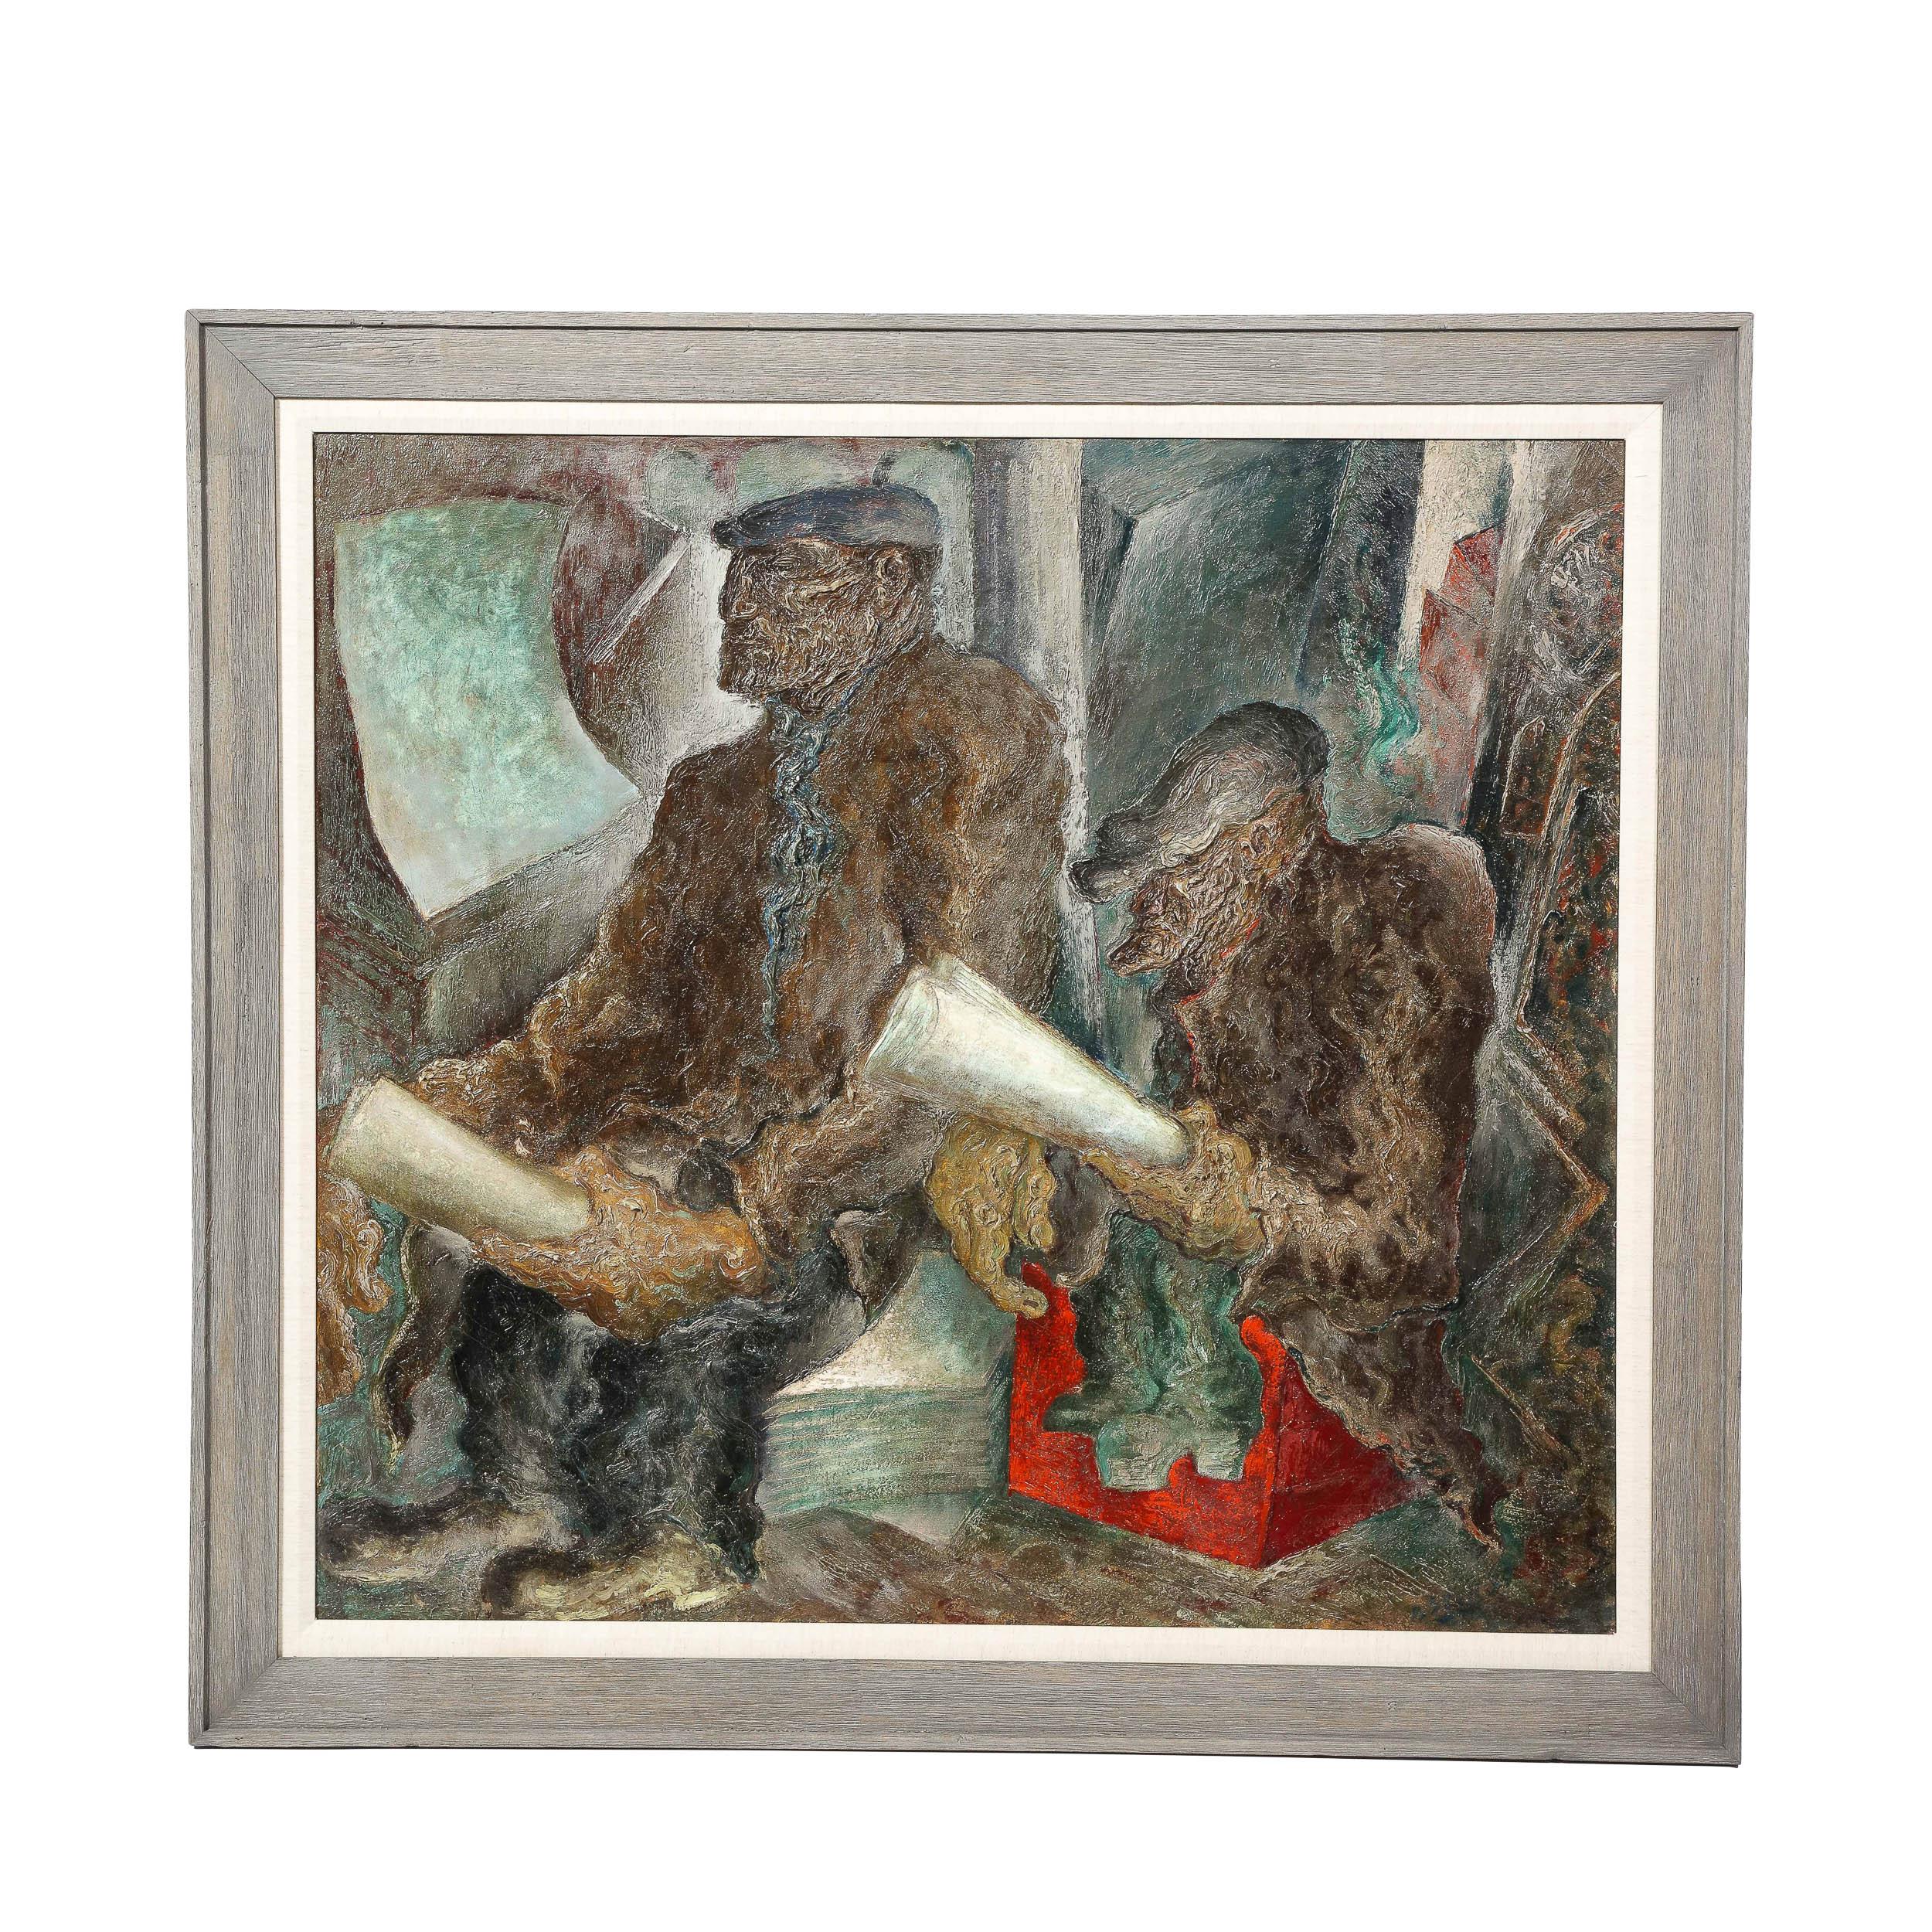 Dieses schöne und anspruchsvolle großformatige Ölgemälde auf Leinwand wurde 1939 von dem angesehenen amerikanischen Künstler John Deforest Stull geschaffen. Die Komposition zeigt eine Szene im WPA-Stil mit zwei Männern - offenbar Arbeiter während